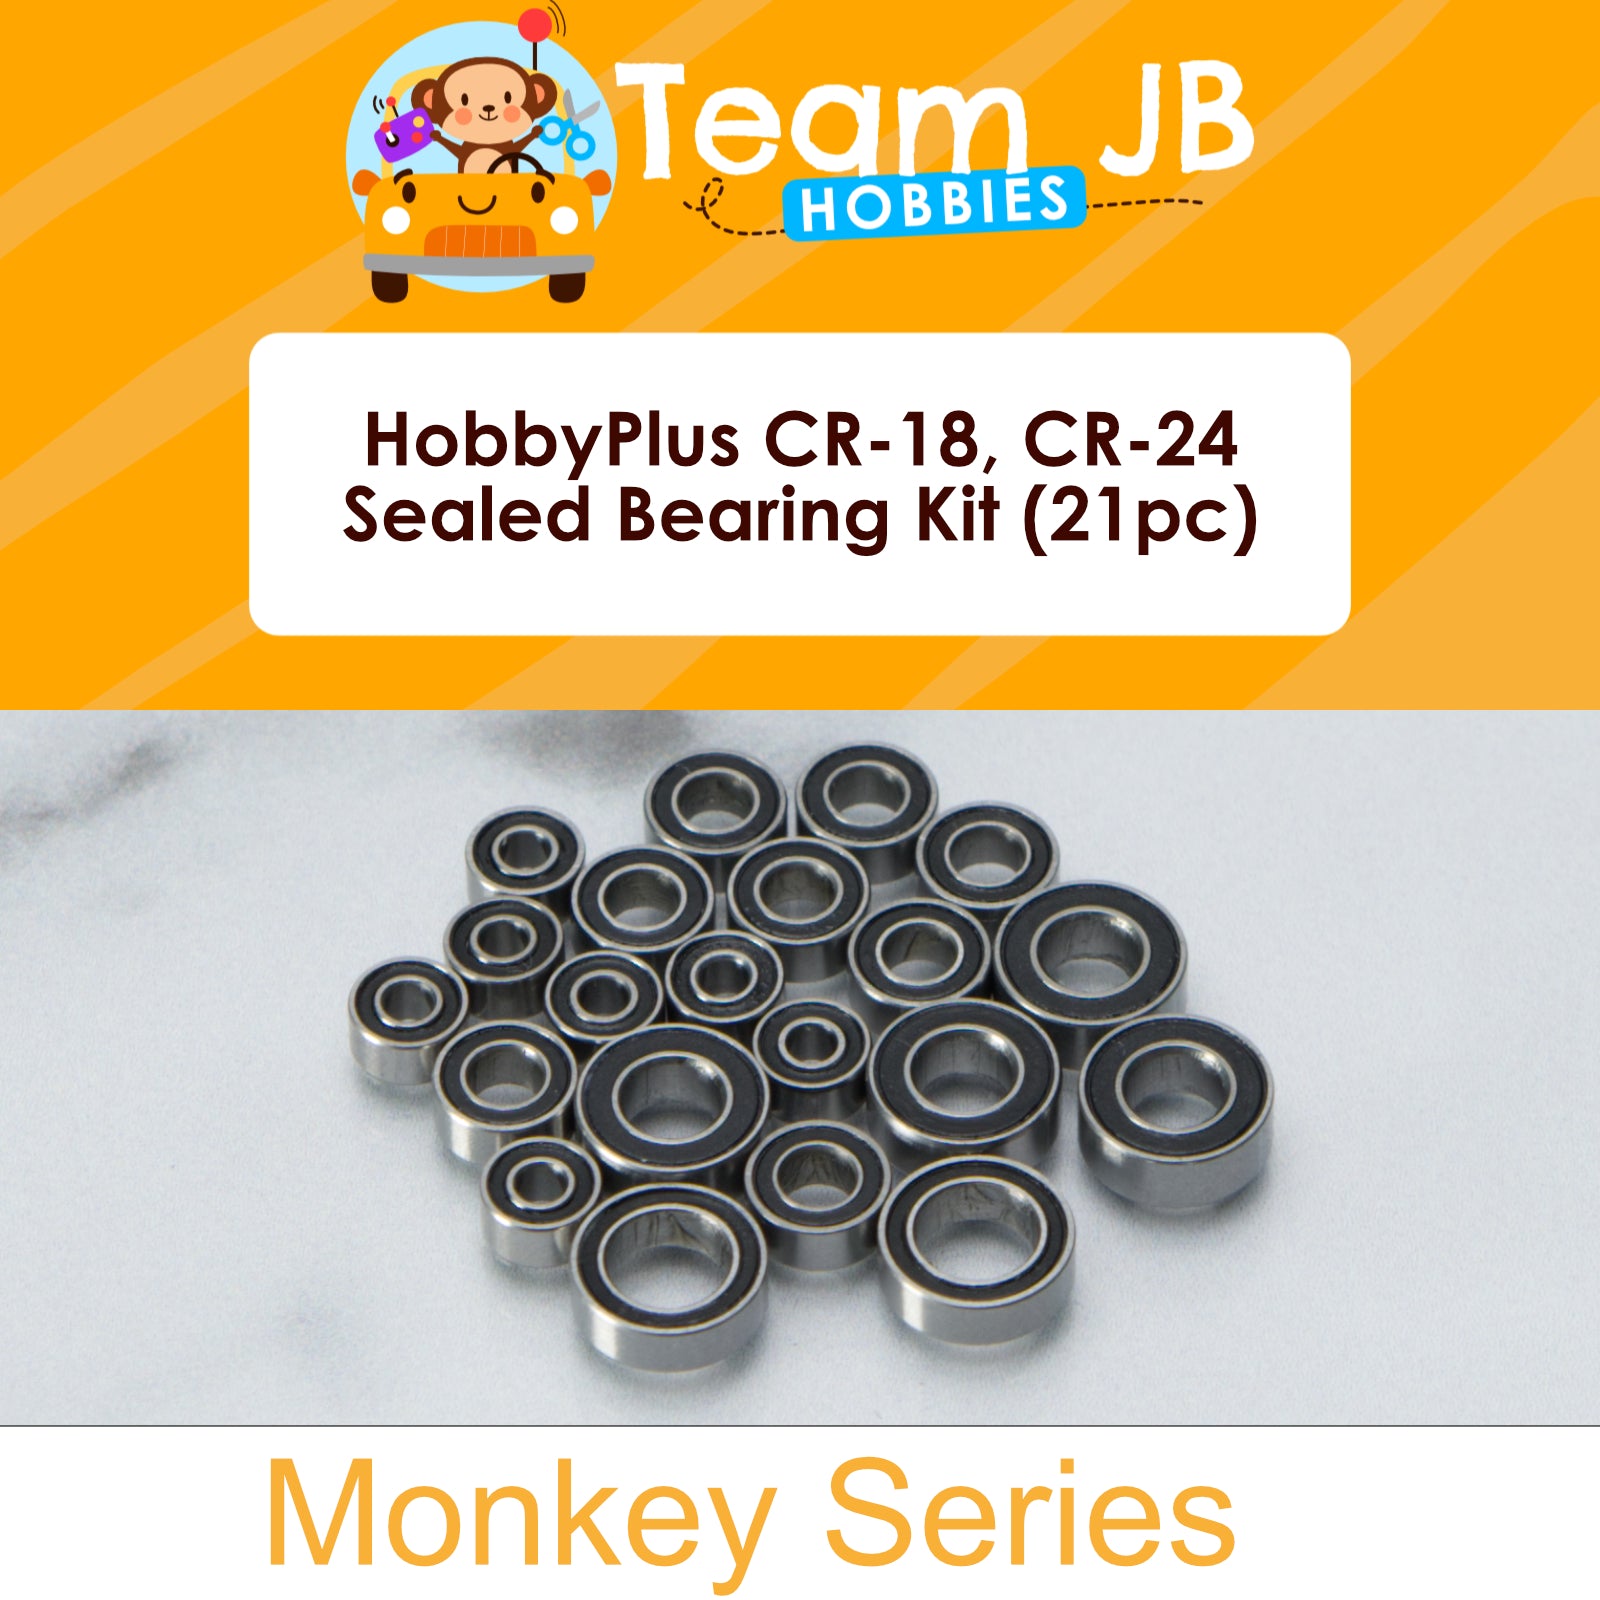 HobbyPlus CR-18, CR-24  - Sealed Bearing Kit